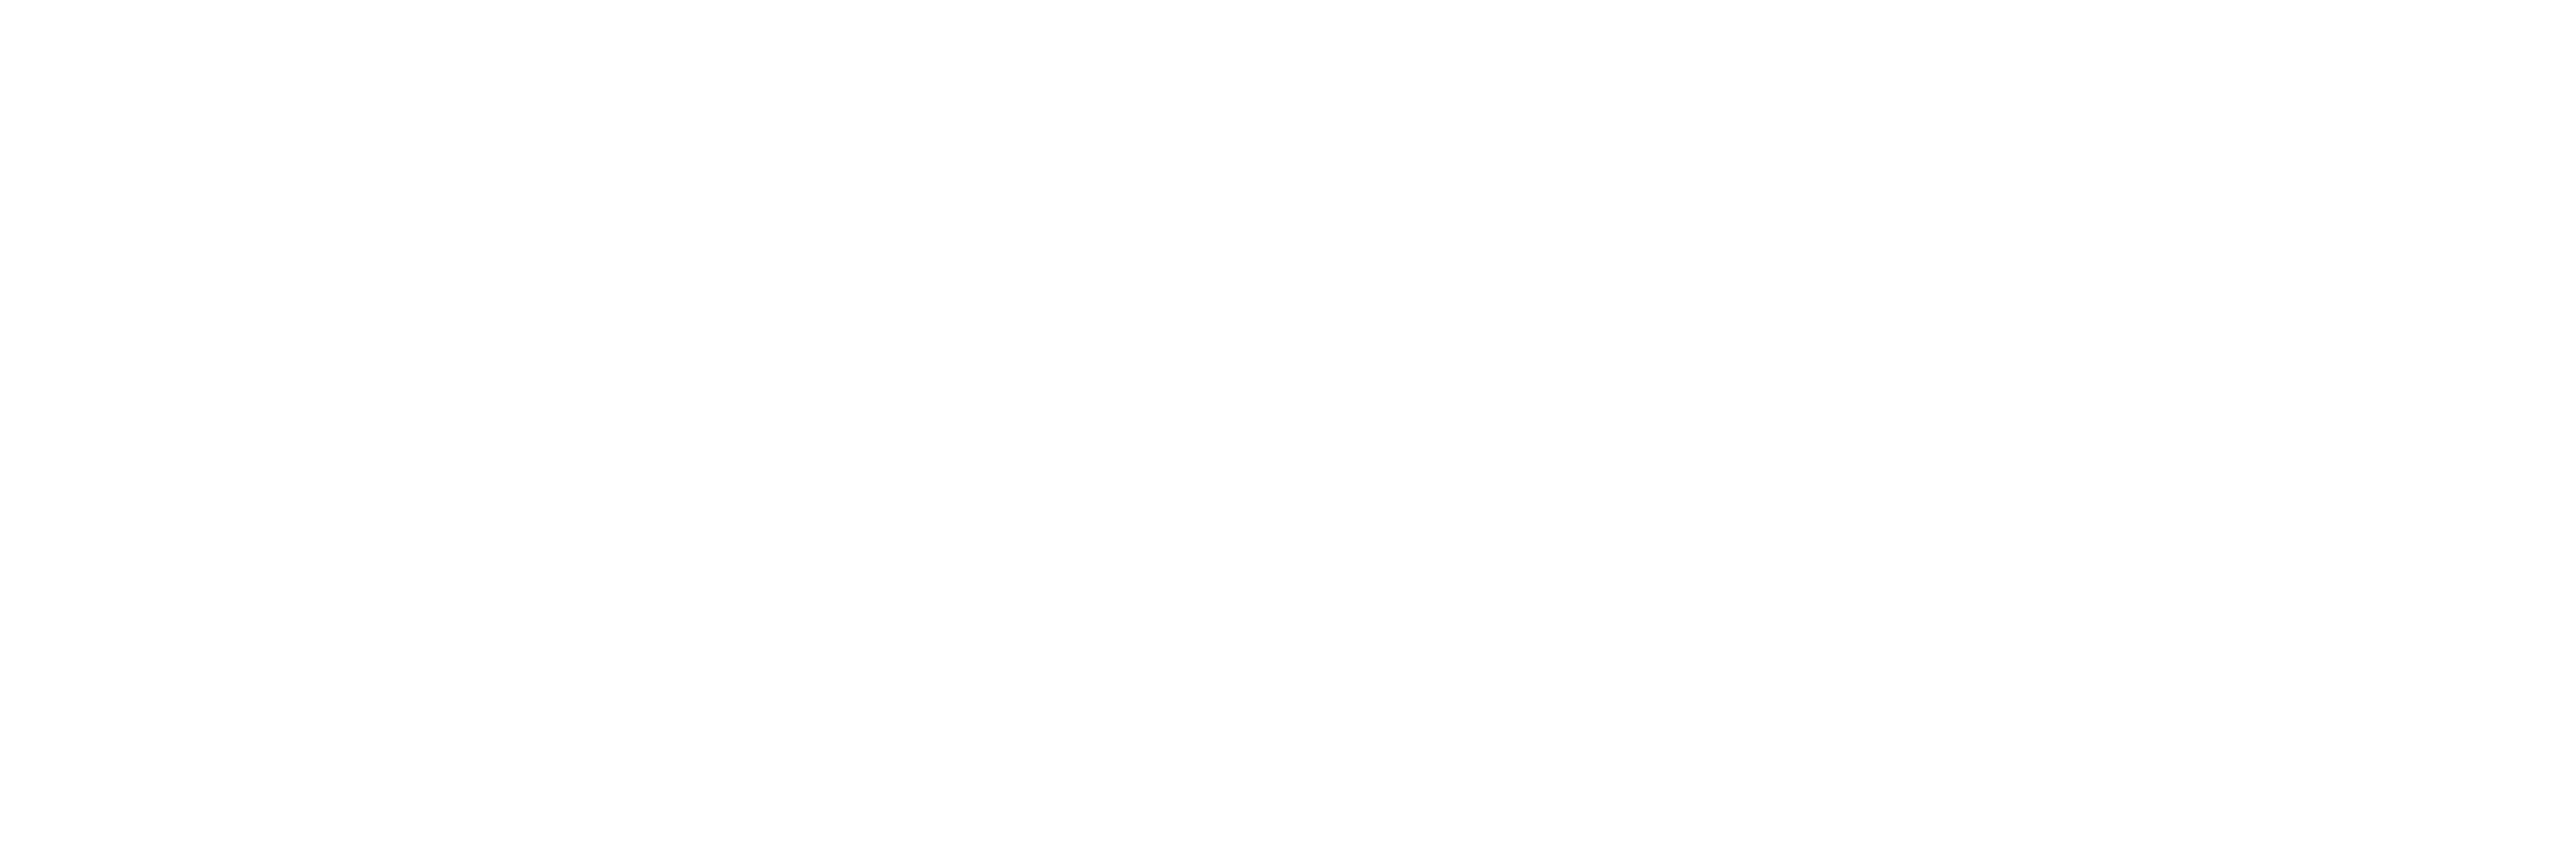 Jump Academy